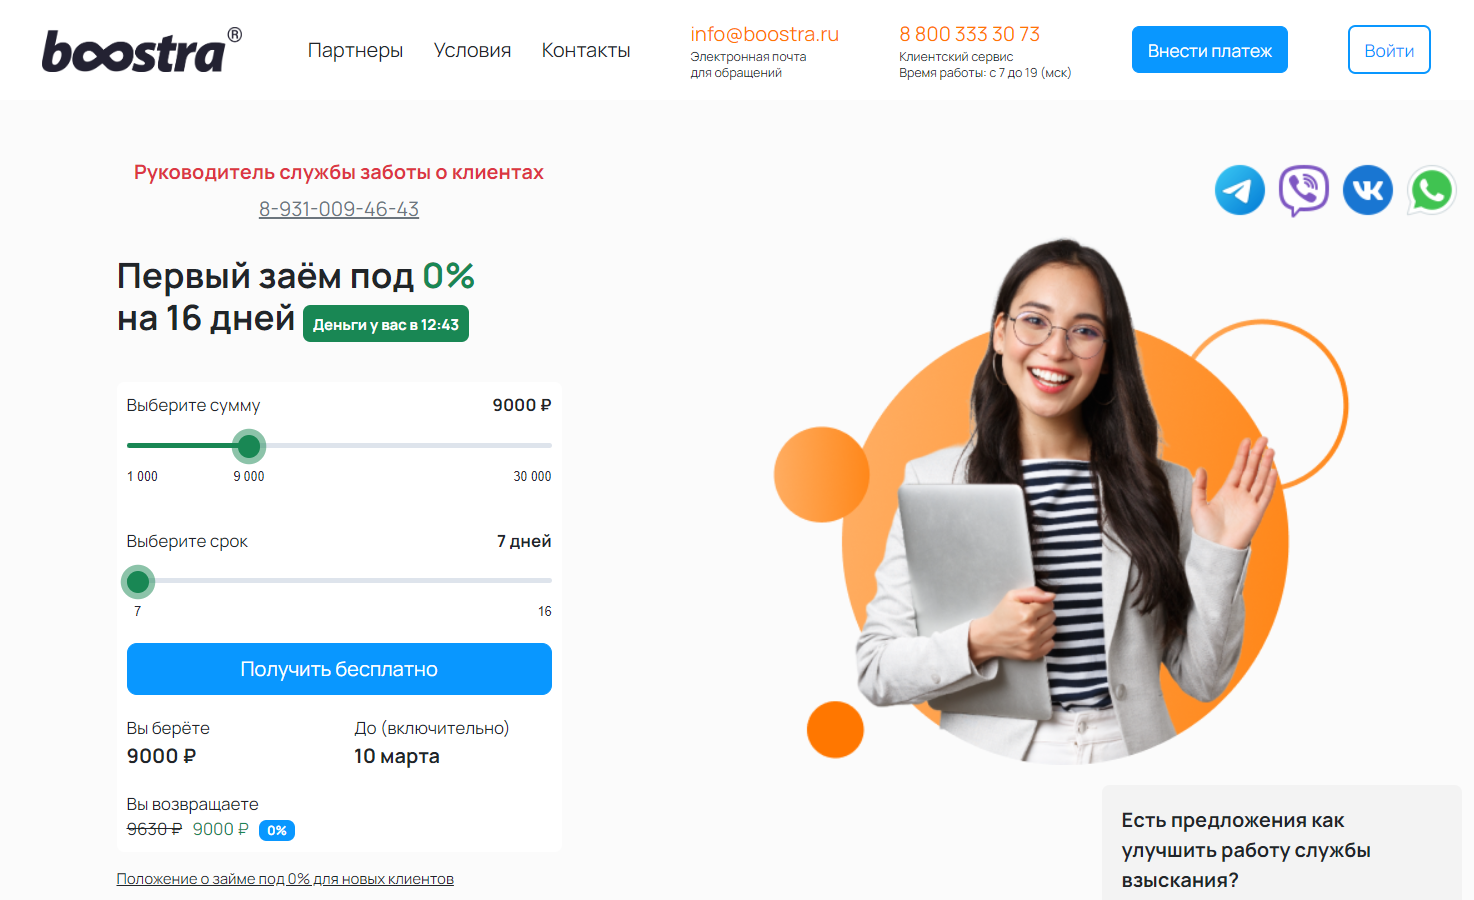 Boostra официальный сайт микрокредитной компании